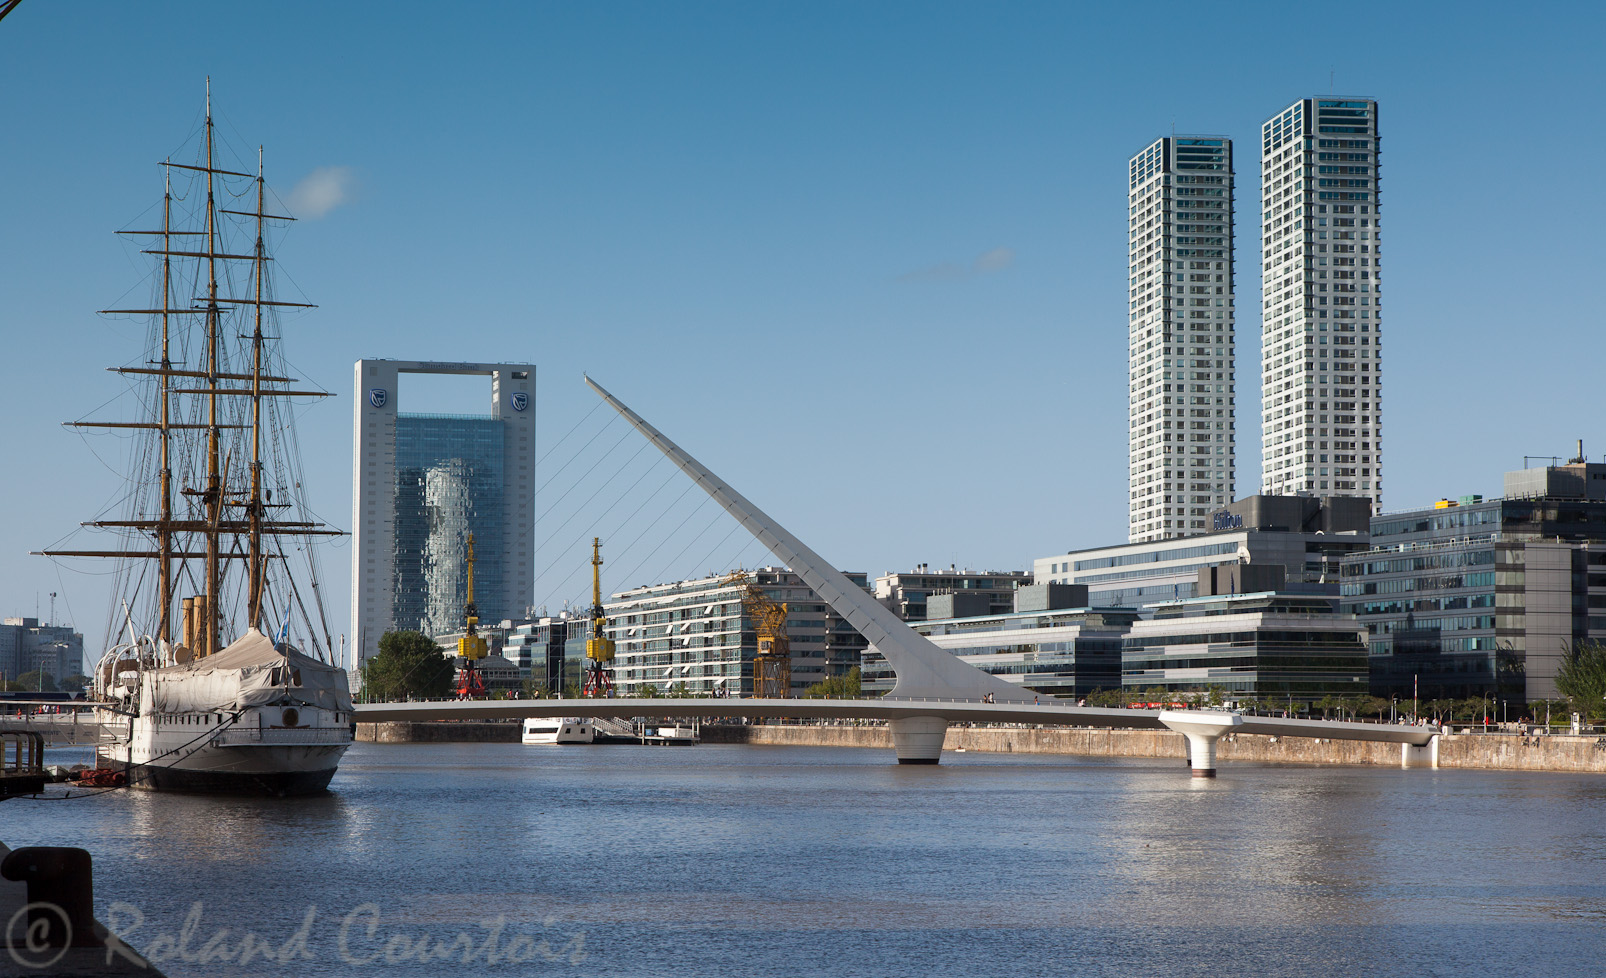 Ancien dock magnifiquement restauré en quartiers d'appartements de luxe et restaurants. Le pont de la Mujer est une réalisation de l'architecte espagnol Santiago Calatrava